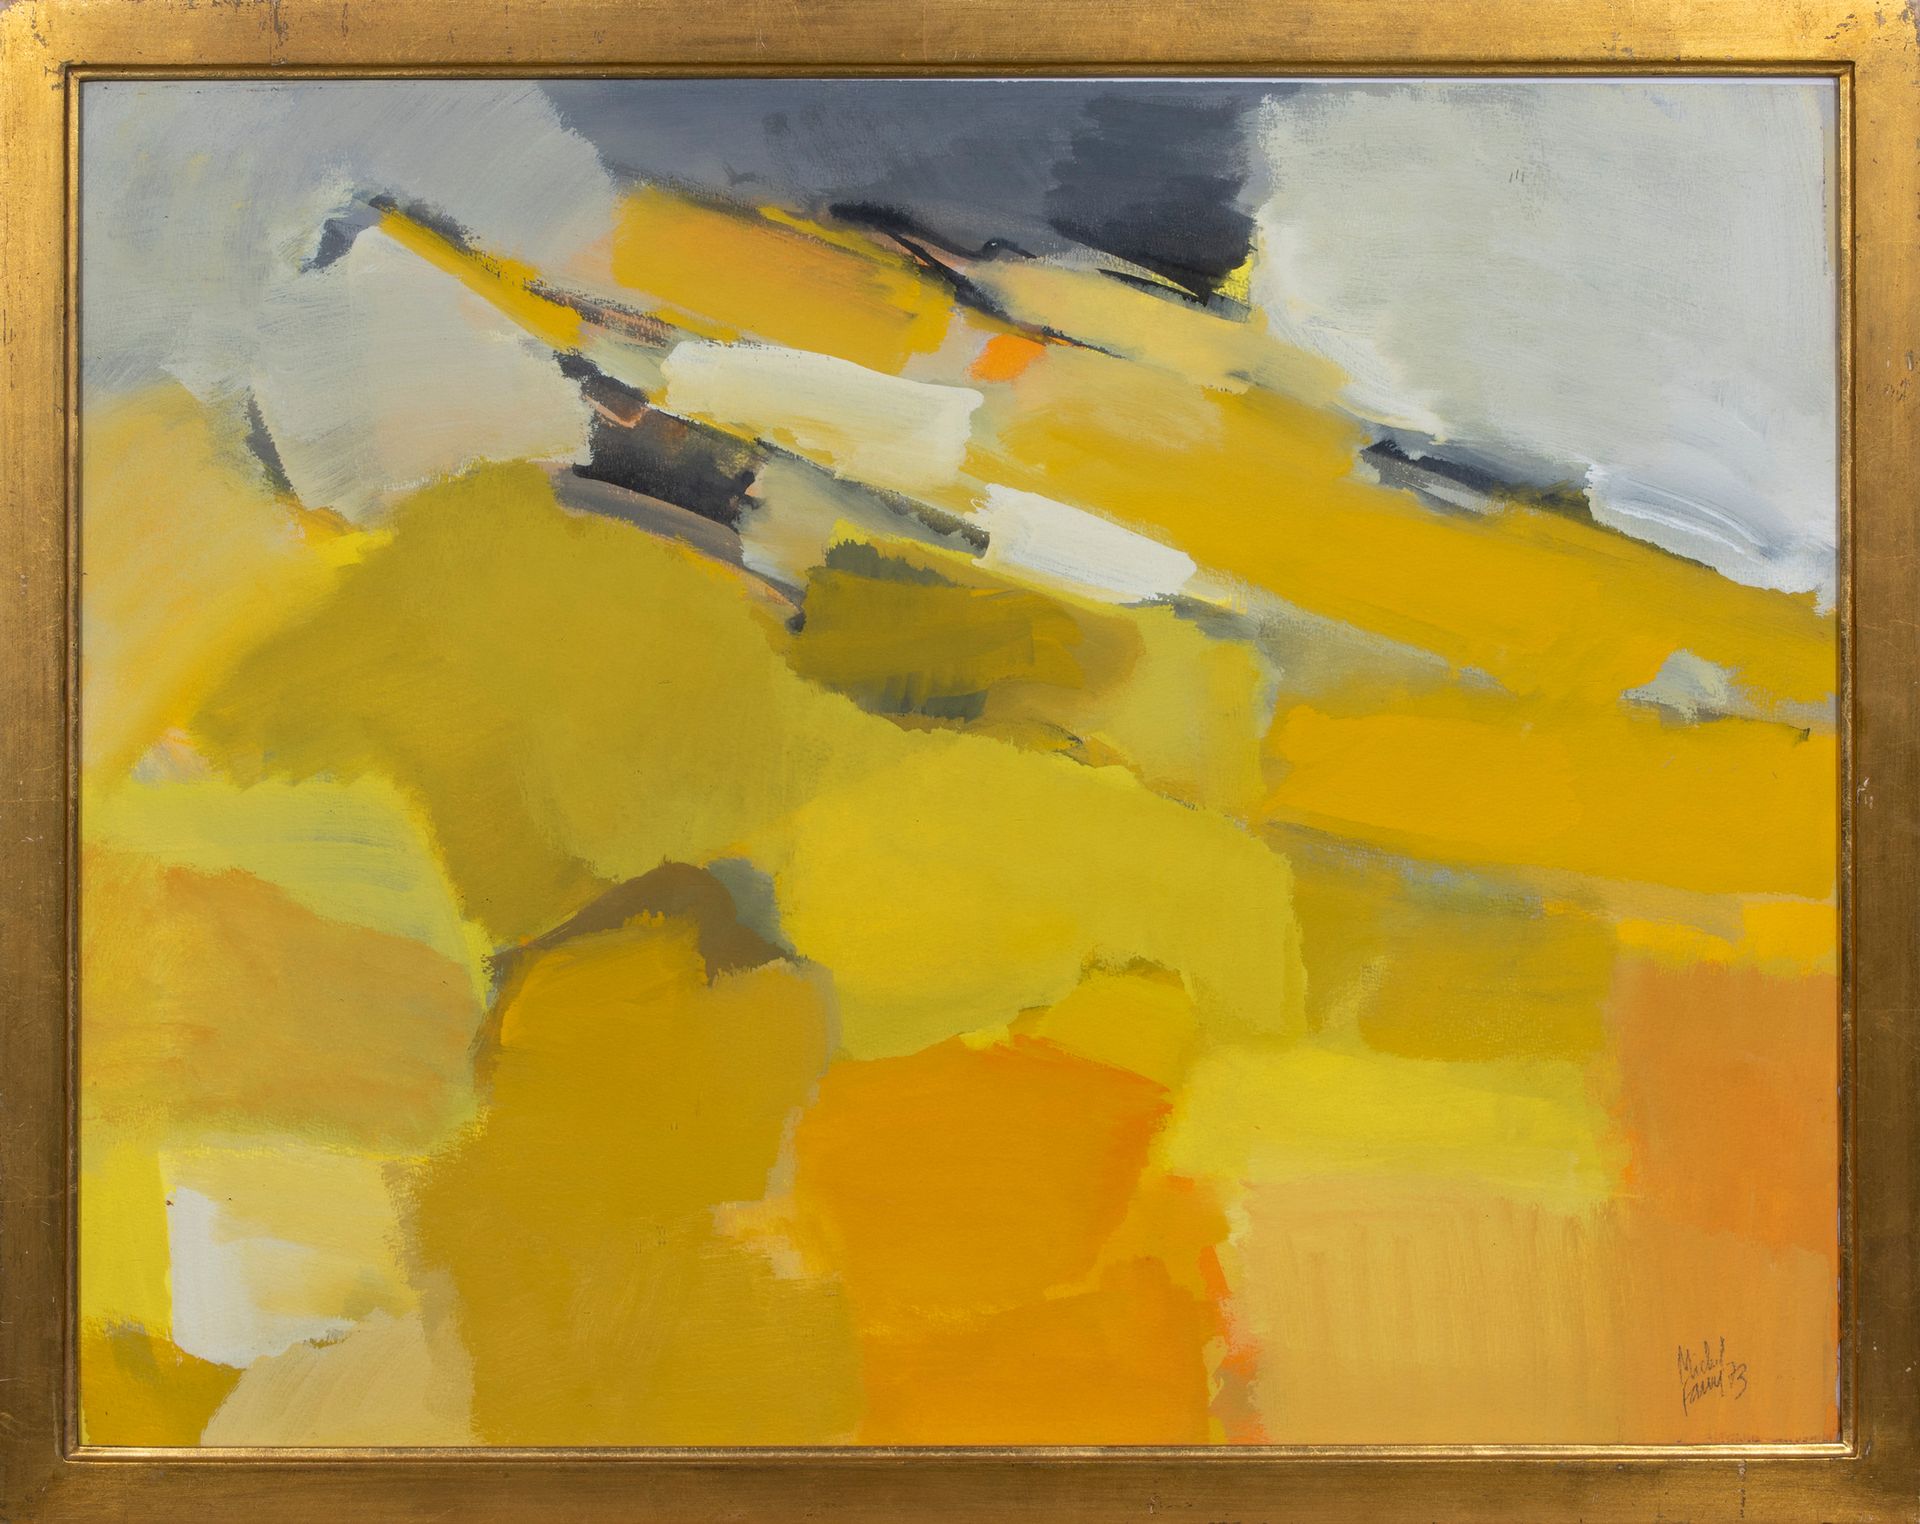 Null 米歇尔-法尔（1928-2009）。

黄色成分，1973年。

水粉画。右下方有签名，日期为73。

50 x 64,5厘米。

玻璃下的框架。